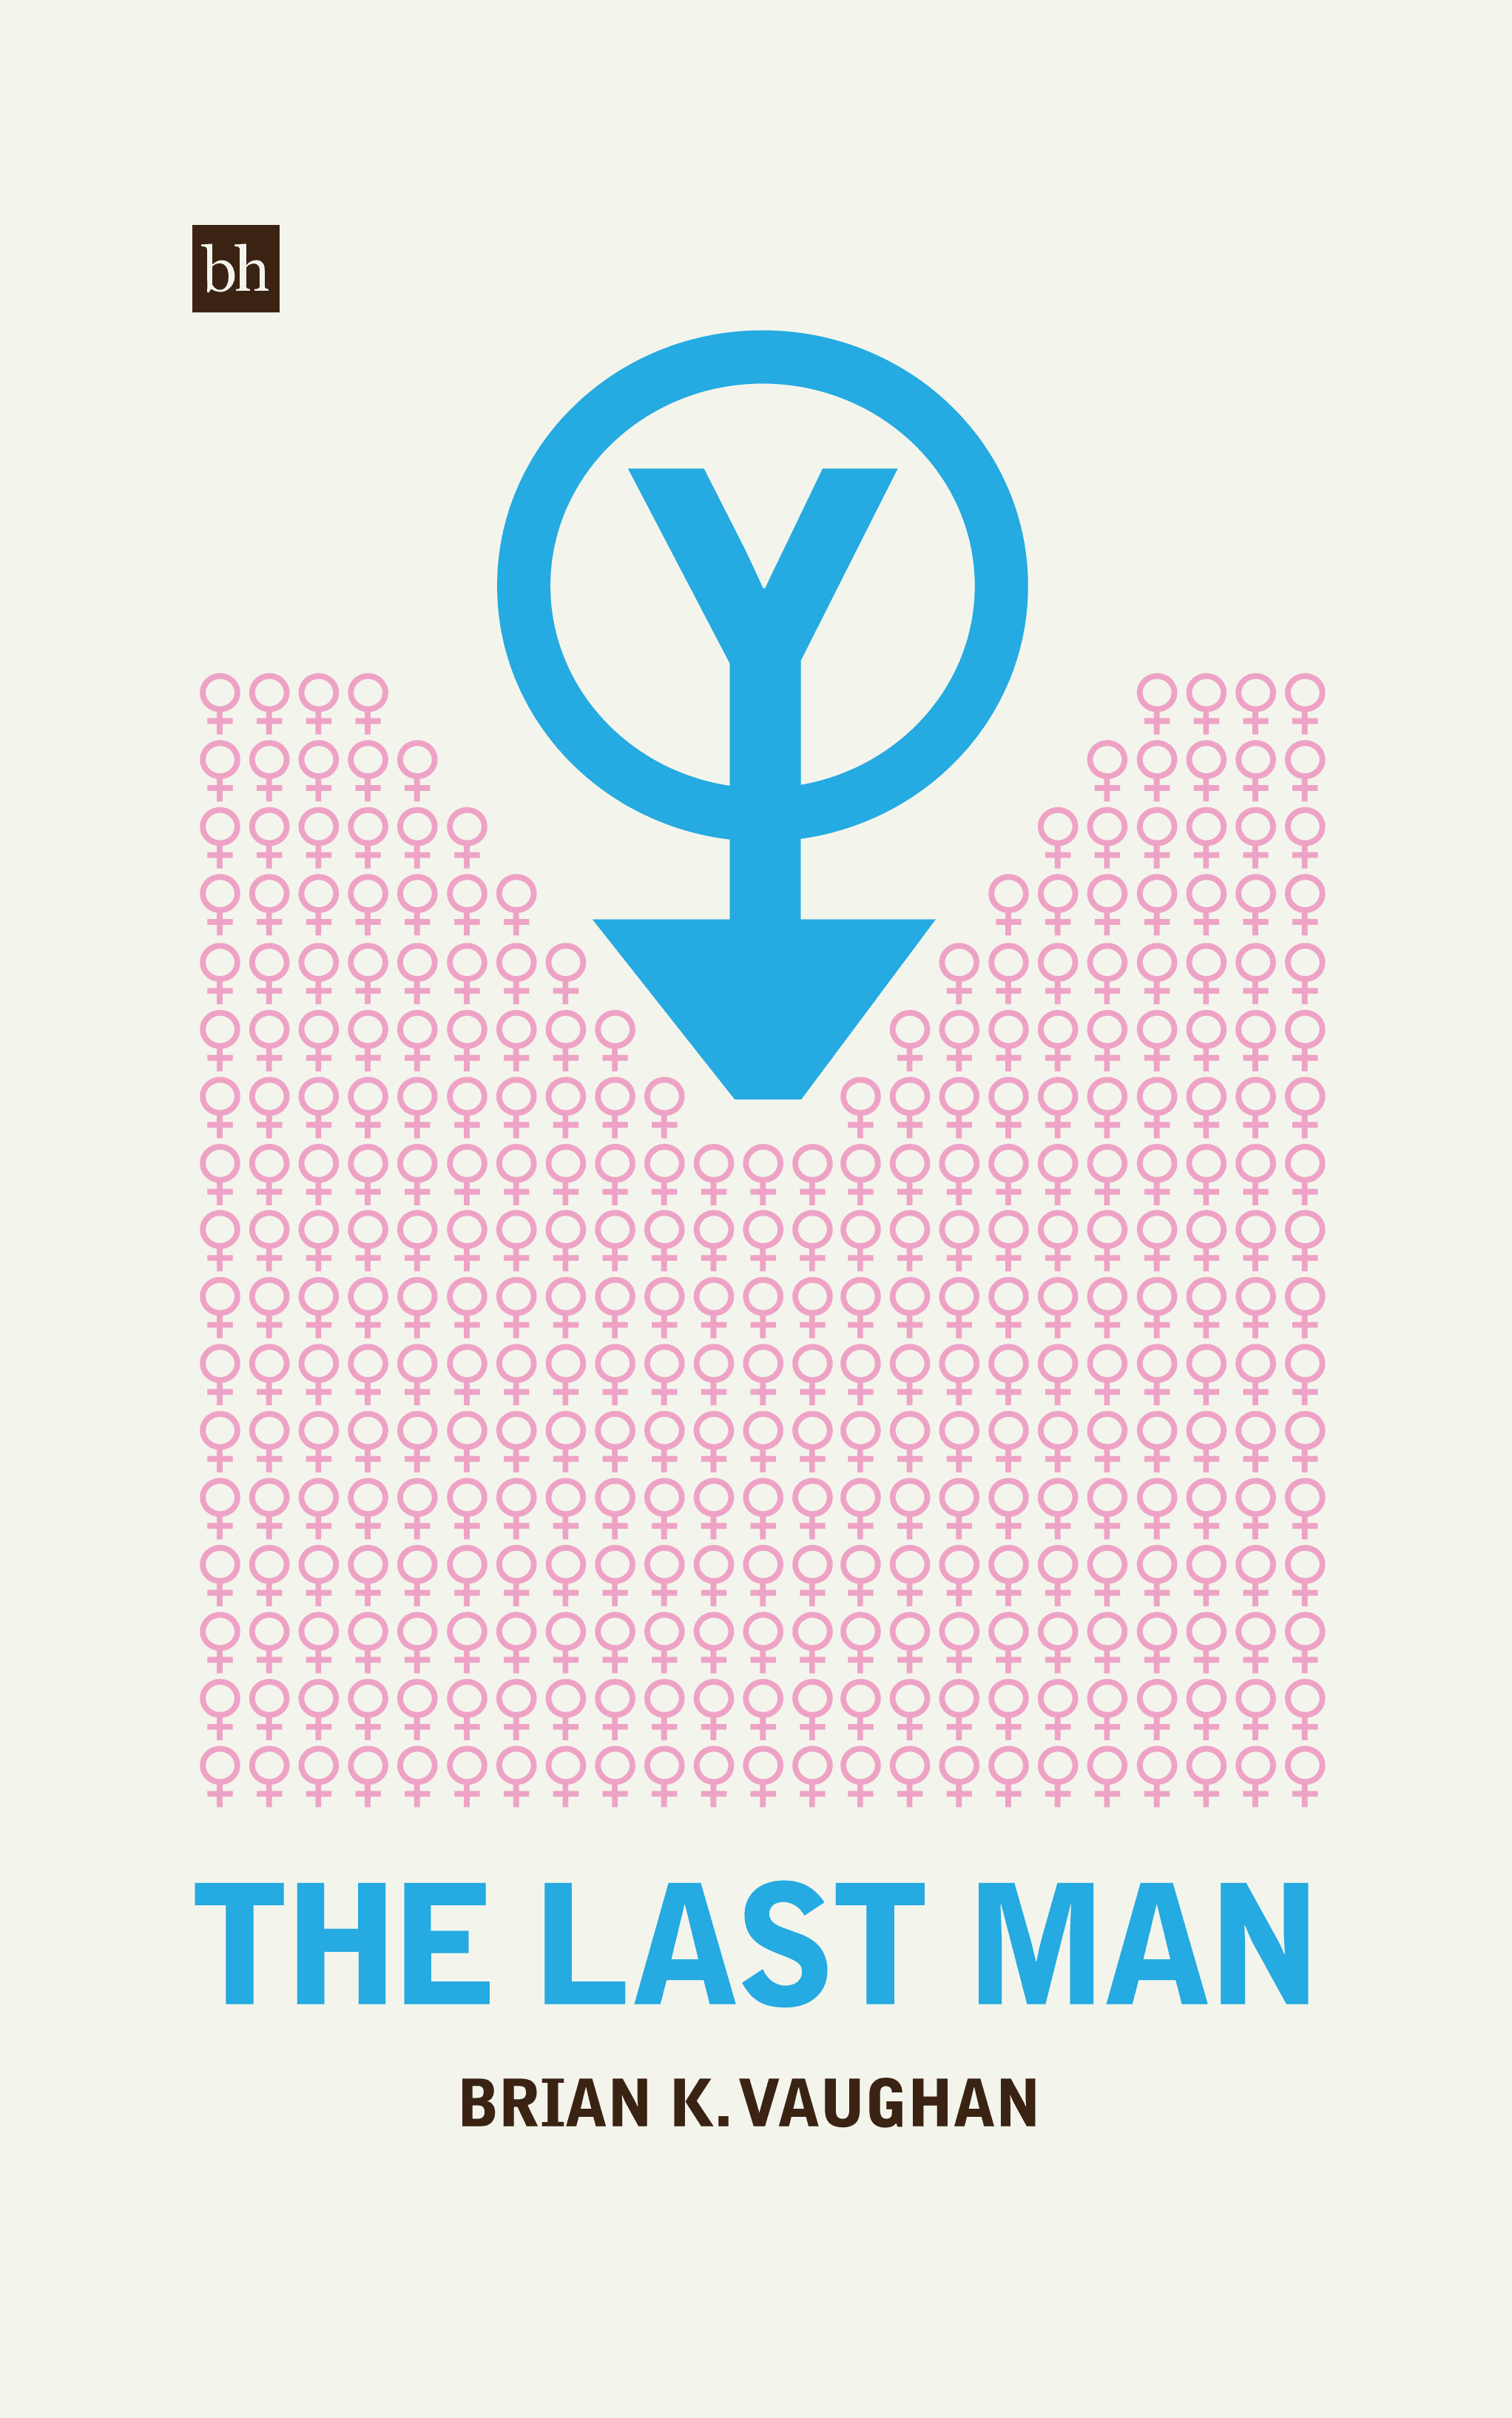 Y: The Last Man by Brian K. Vaughan